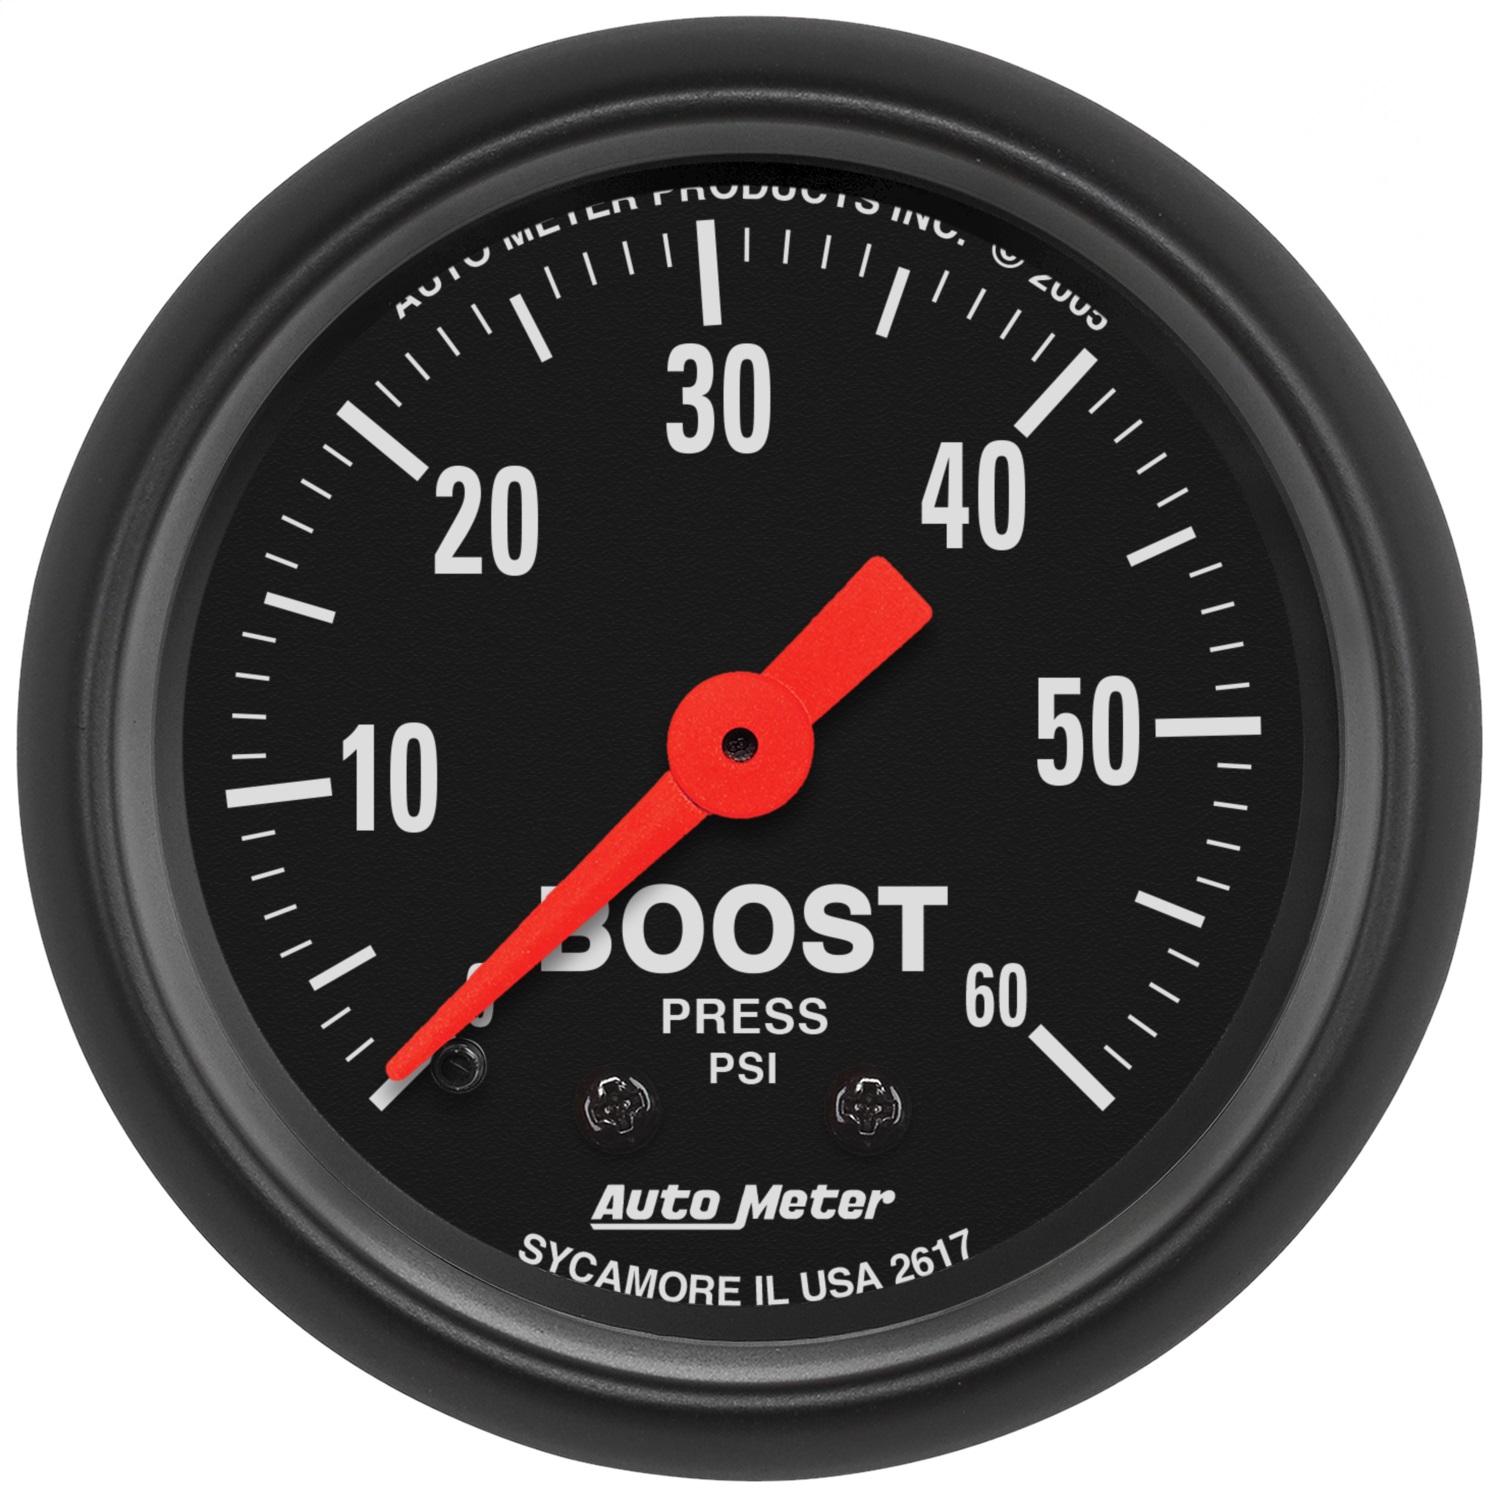 Auto Meter Auto Meter 2617 Z-Series; Mechanical Boost Gauge